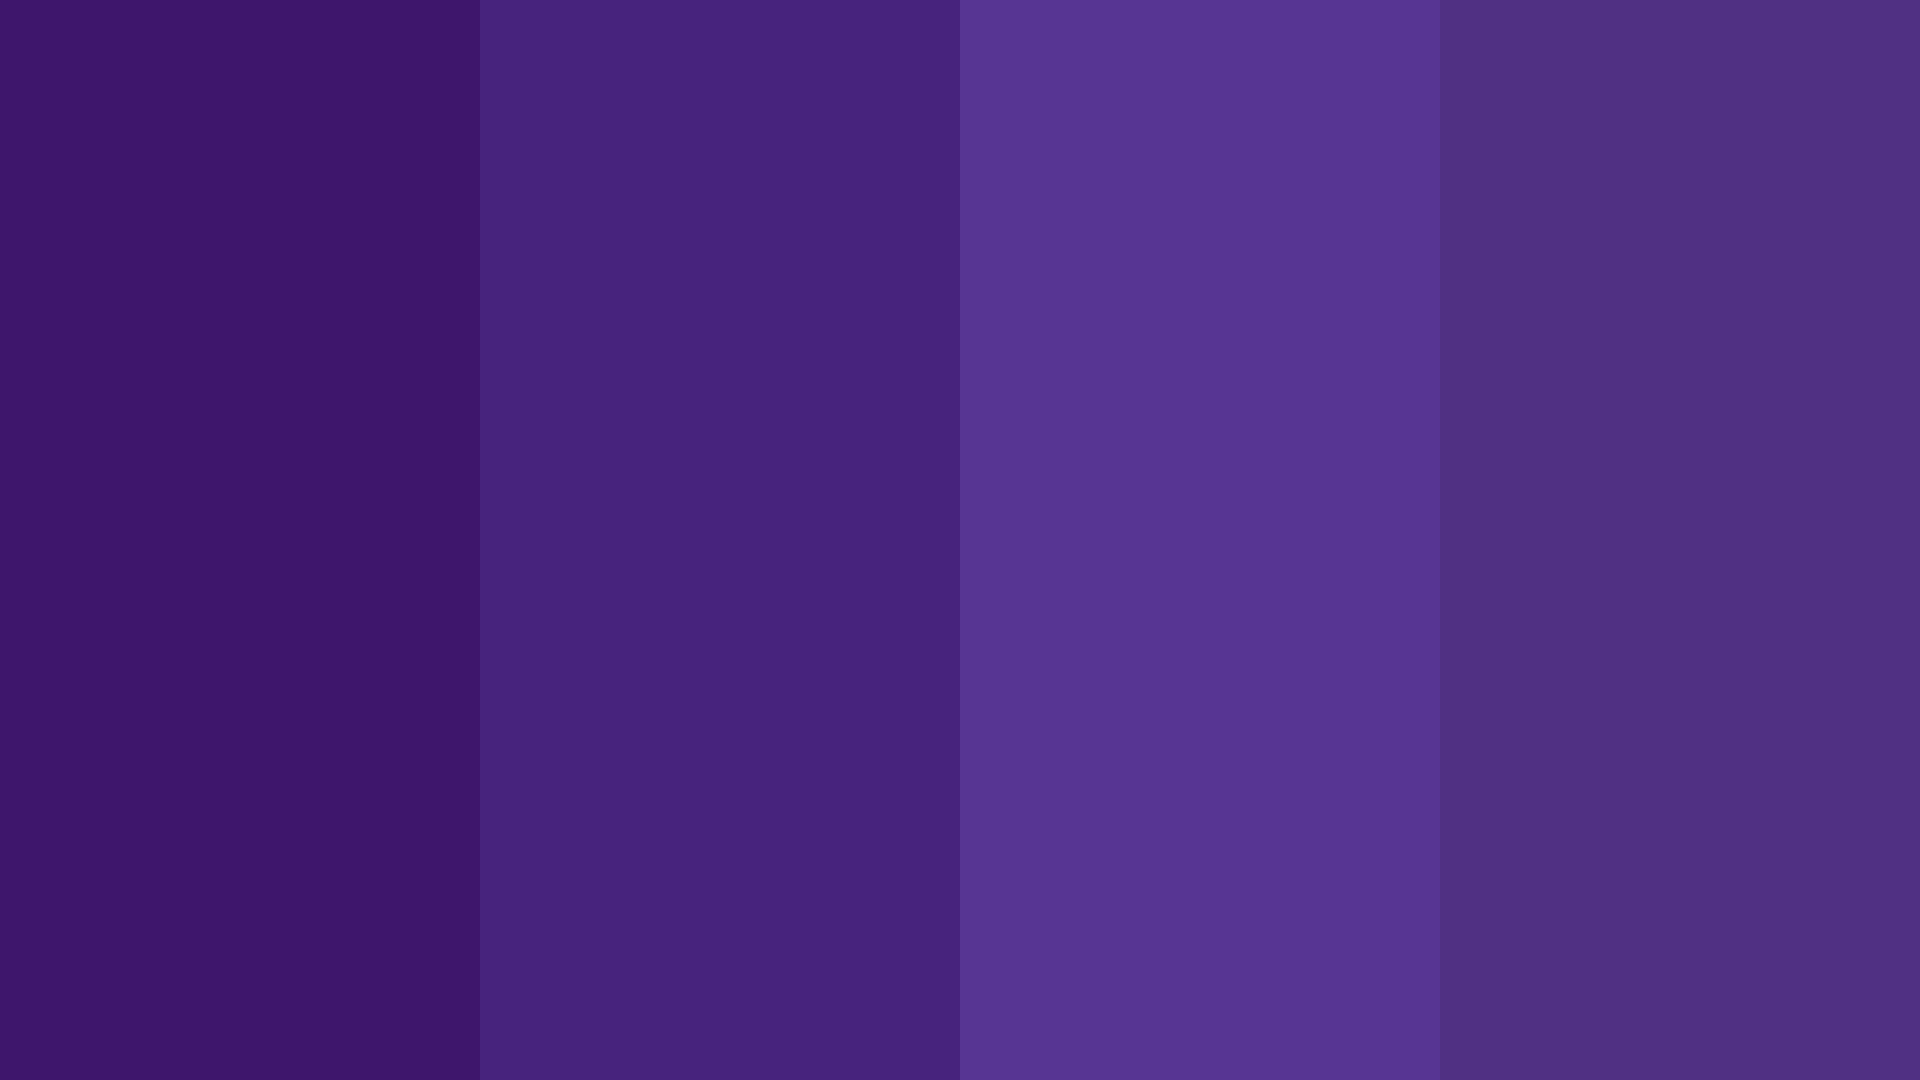 Paletade Colores En Tono Violeta Mate. Fondo de pantalla